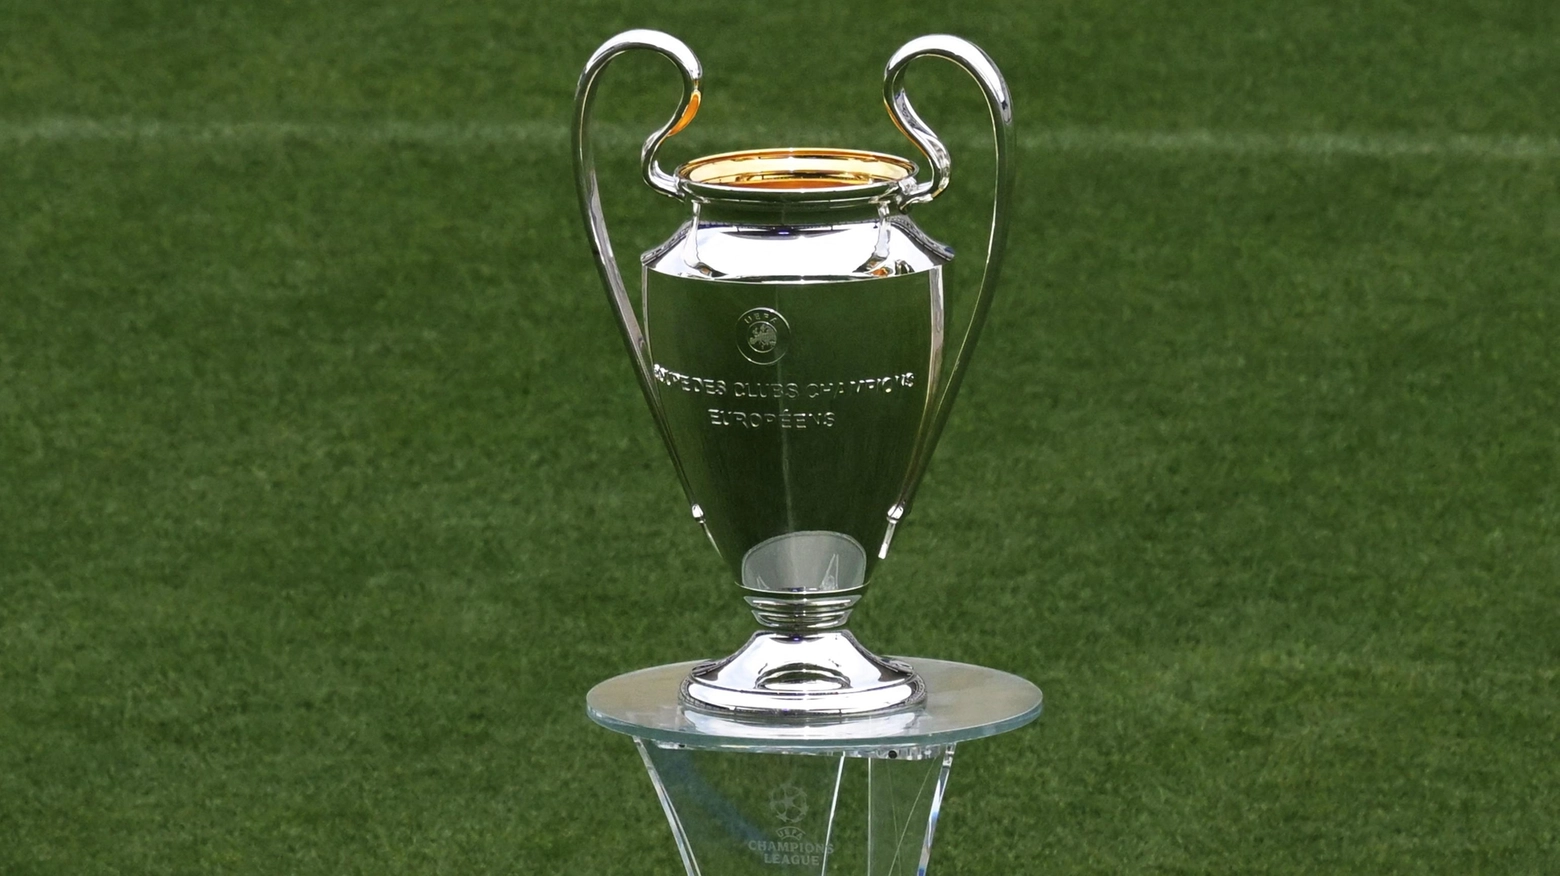 Il trofeo della Champions League